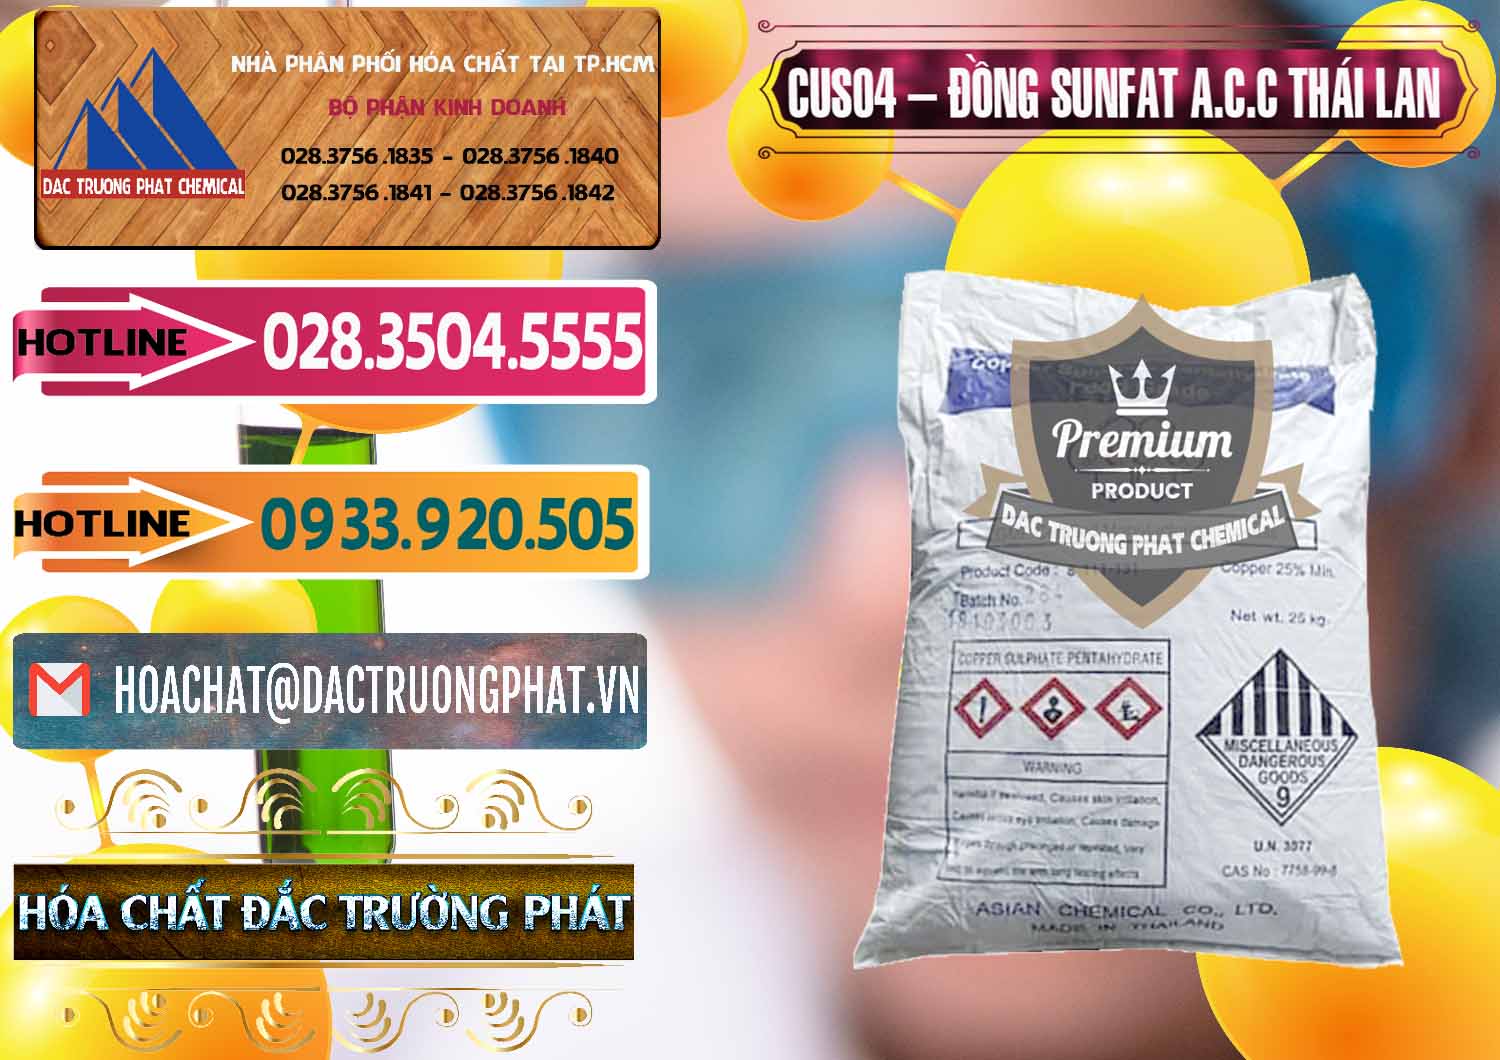 Công ty chuyên nhập khẩu & bán CuSO4 – Đồng Sunfat A.C.C Thái Lan - 0249 - Công ty chuyên cung cấp & kinh doanh hóa chất tại TP.HCM - dactruongphat.vn